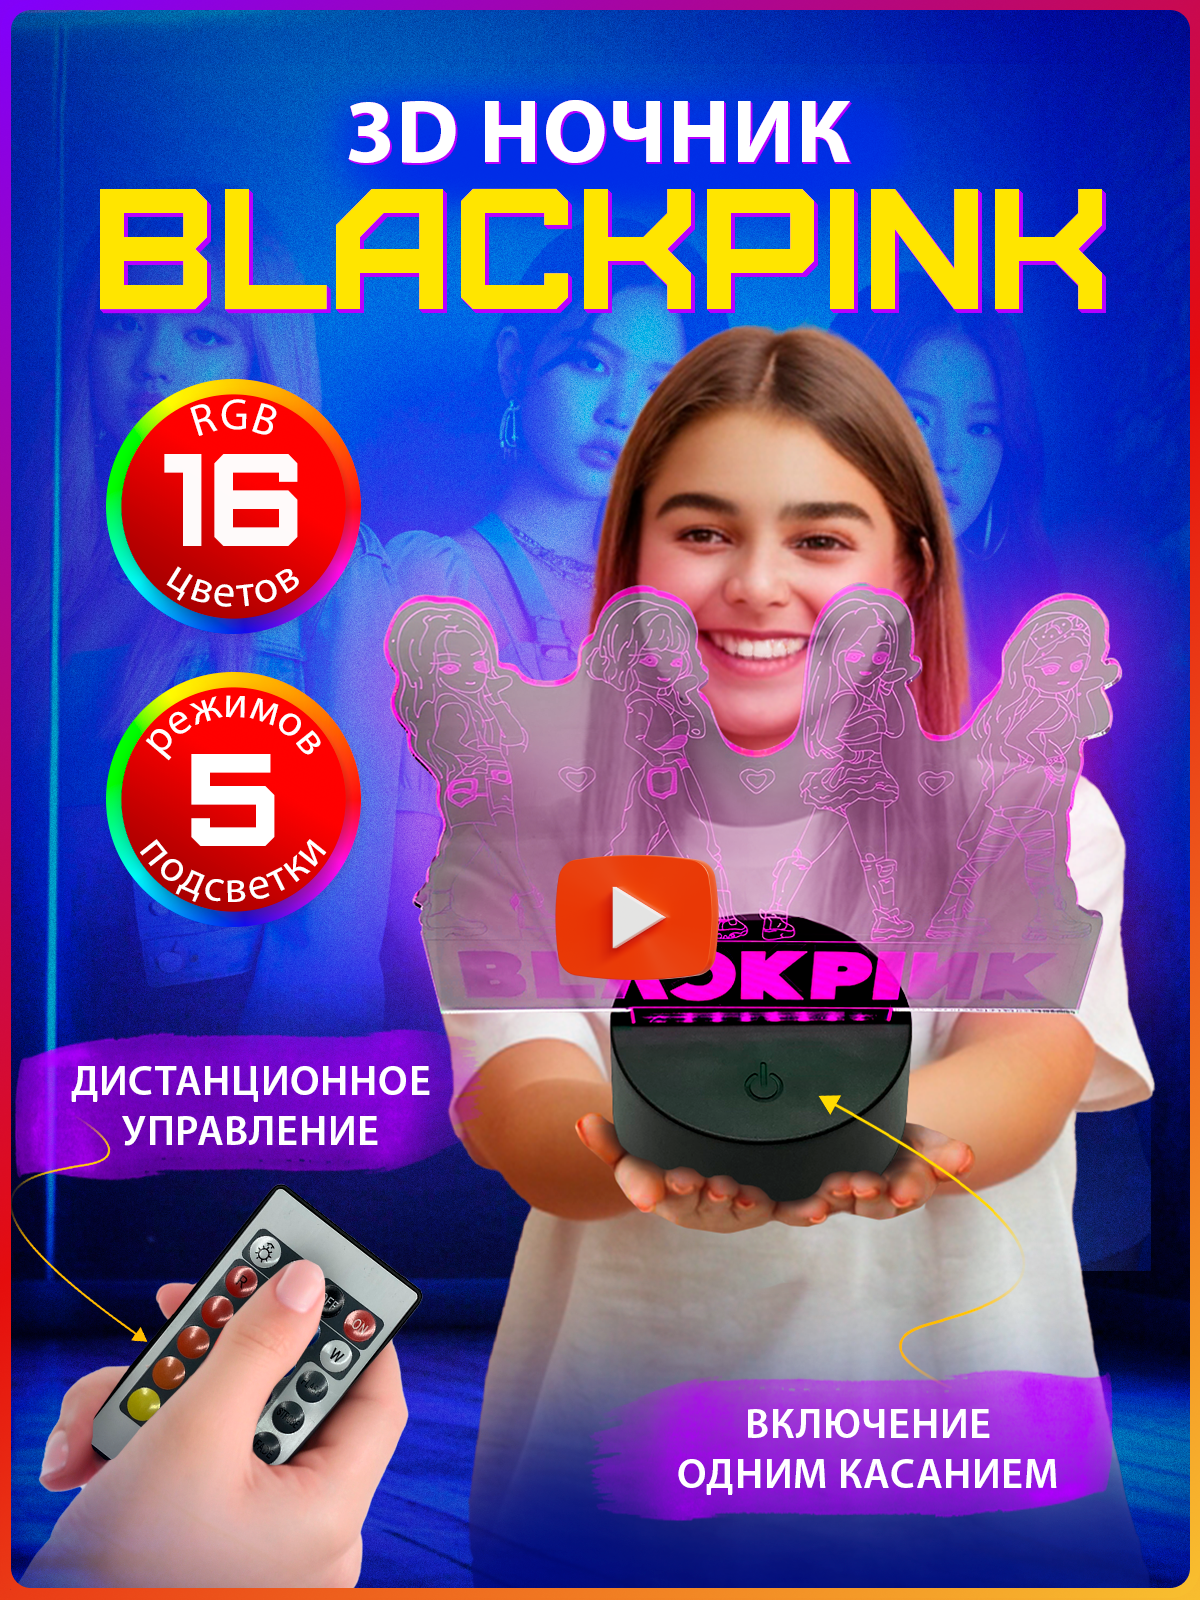 Светильник TAYMLUX Blackpink, ночник декоративный детский светодиодный беспроводной 3д, 3D неоновый на батарейках с пультом управления для подростка